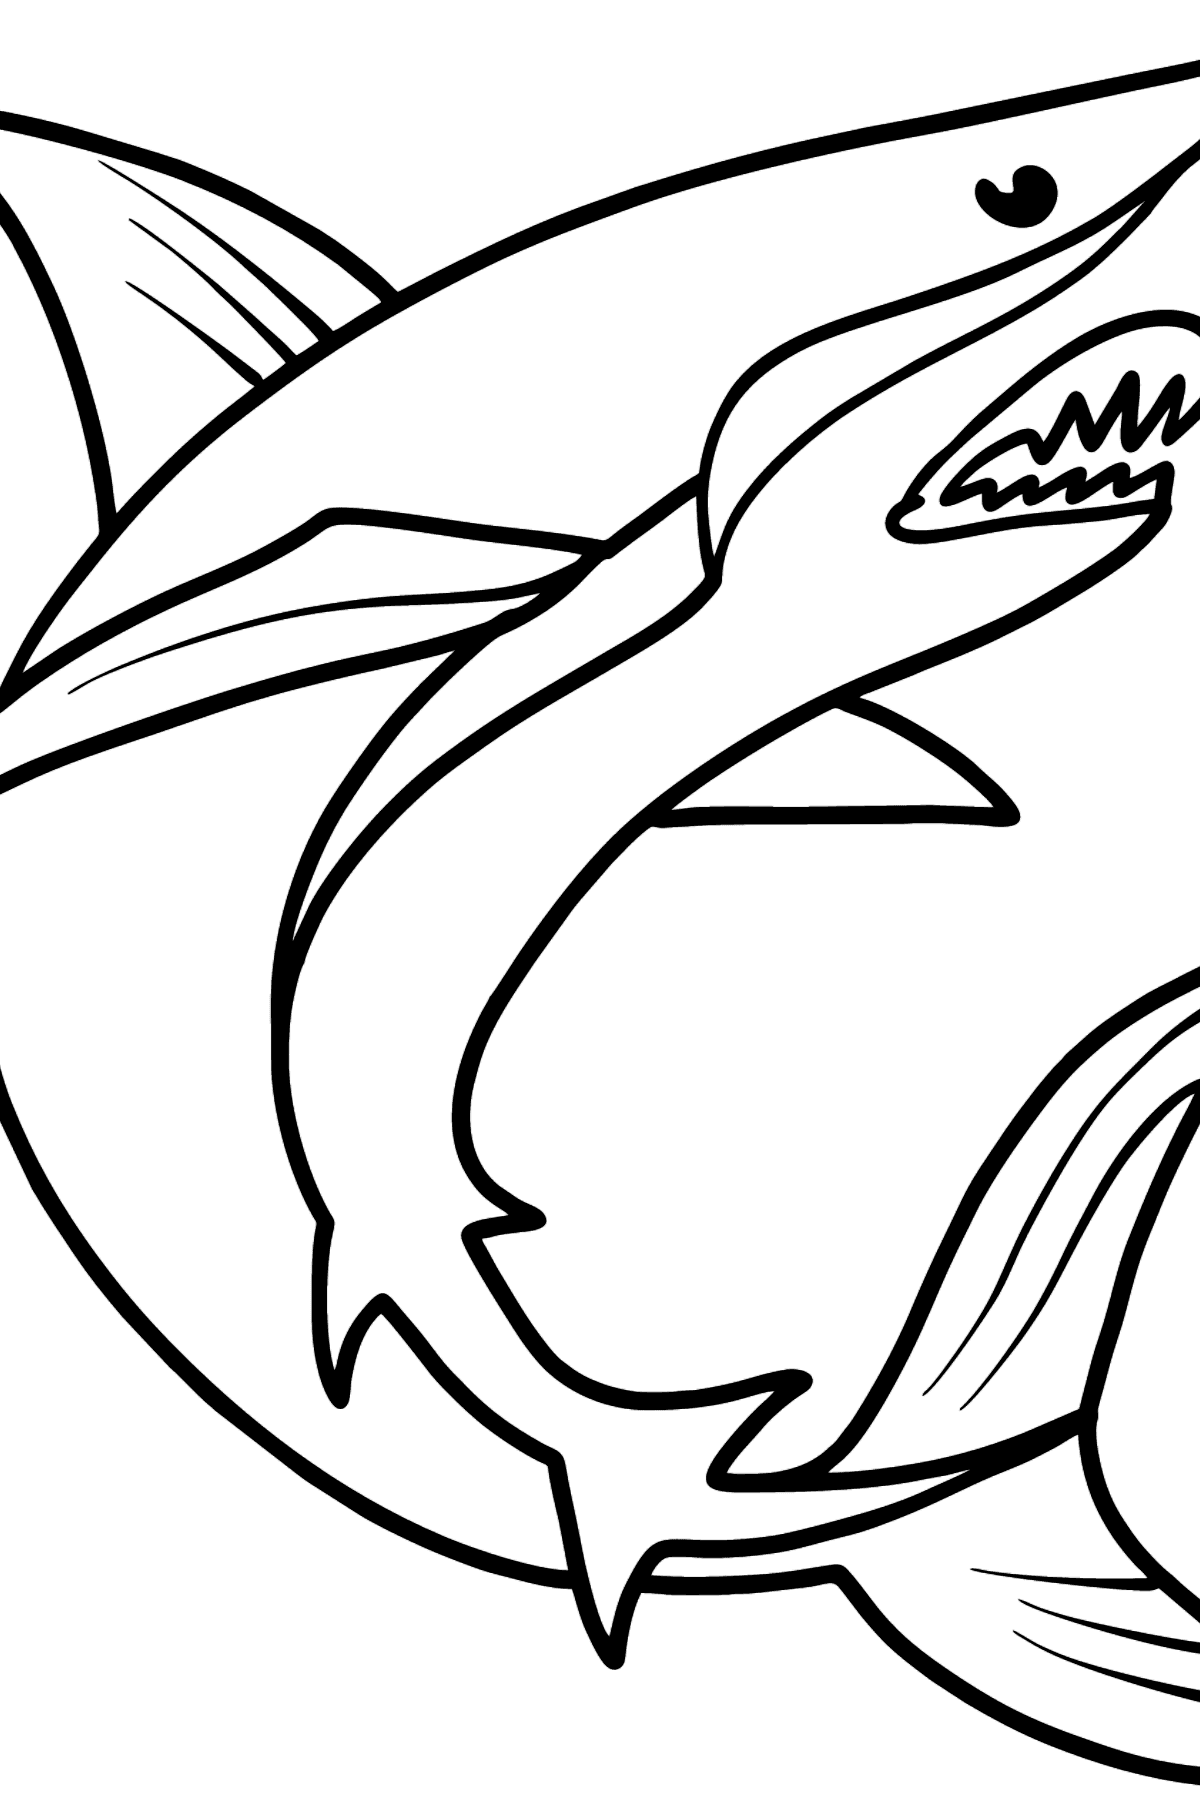 Desenho para colorir de tubarão - Imagens para Colorir para Crianças